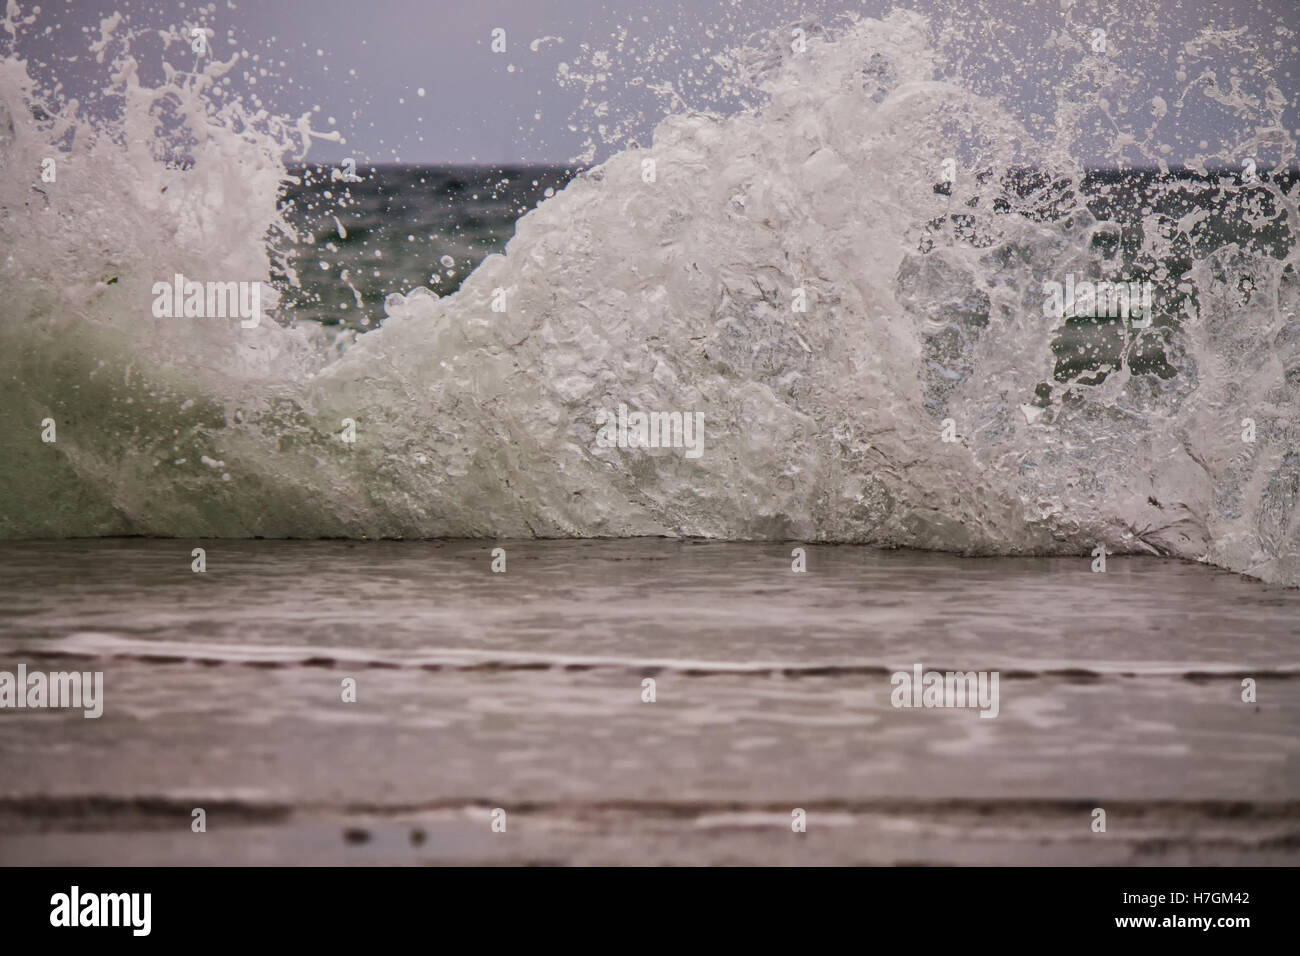 Powerful sea splash wave with sprays and foam Stock Photo